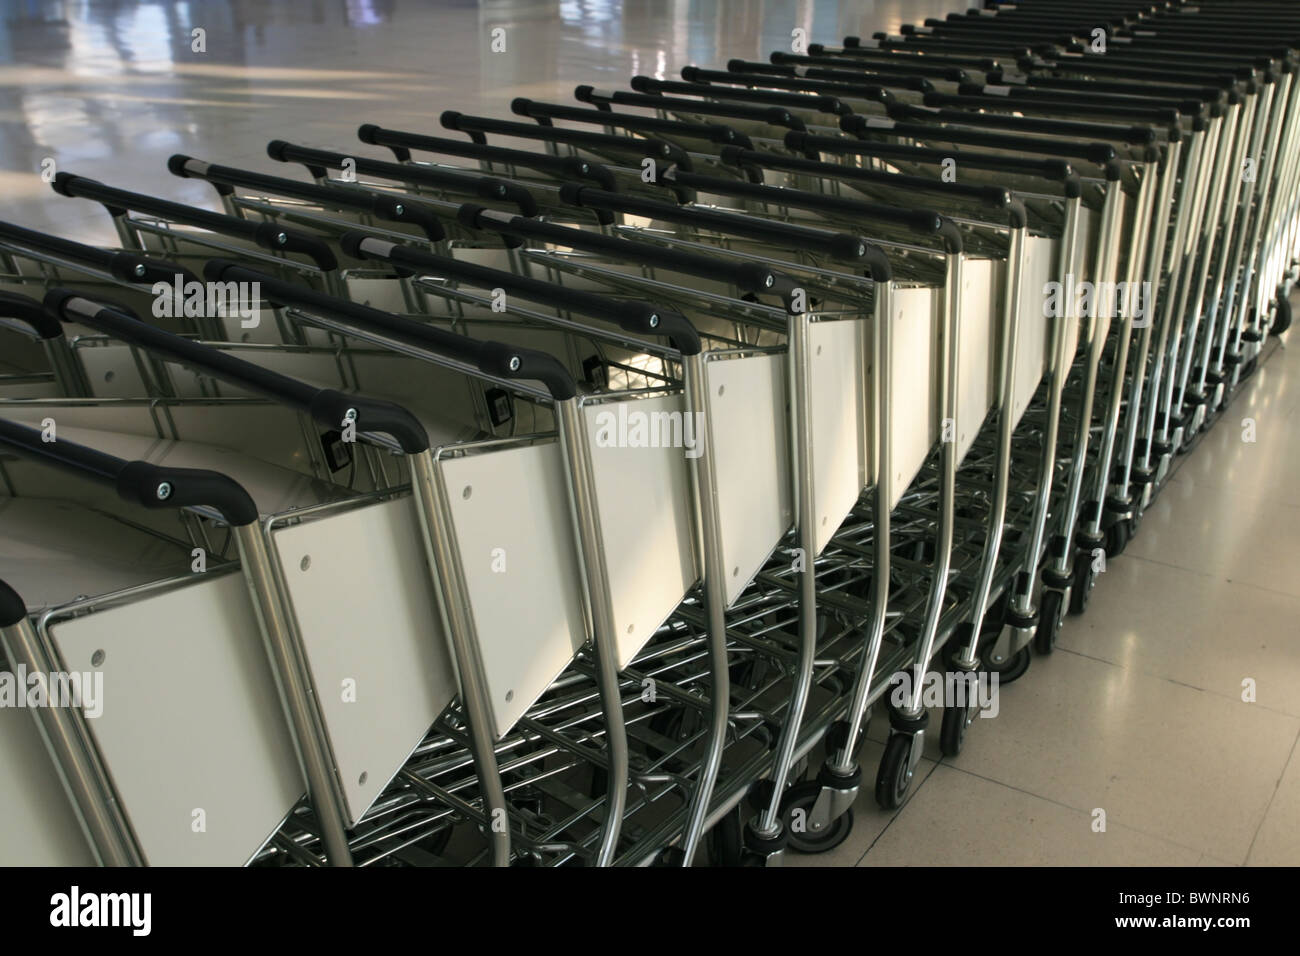 Rangées de chariots à bagages de l'aéroport pour les passagers prêts à les utiliser Banque D'Images